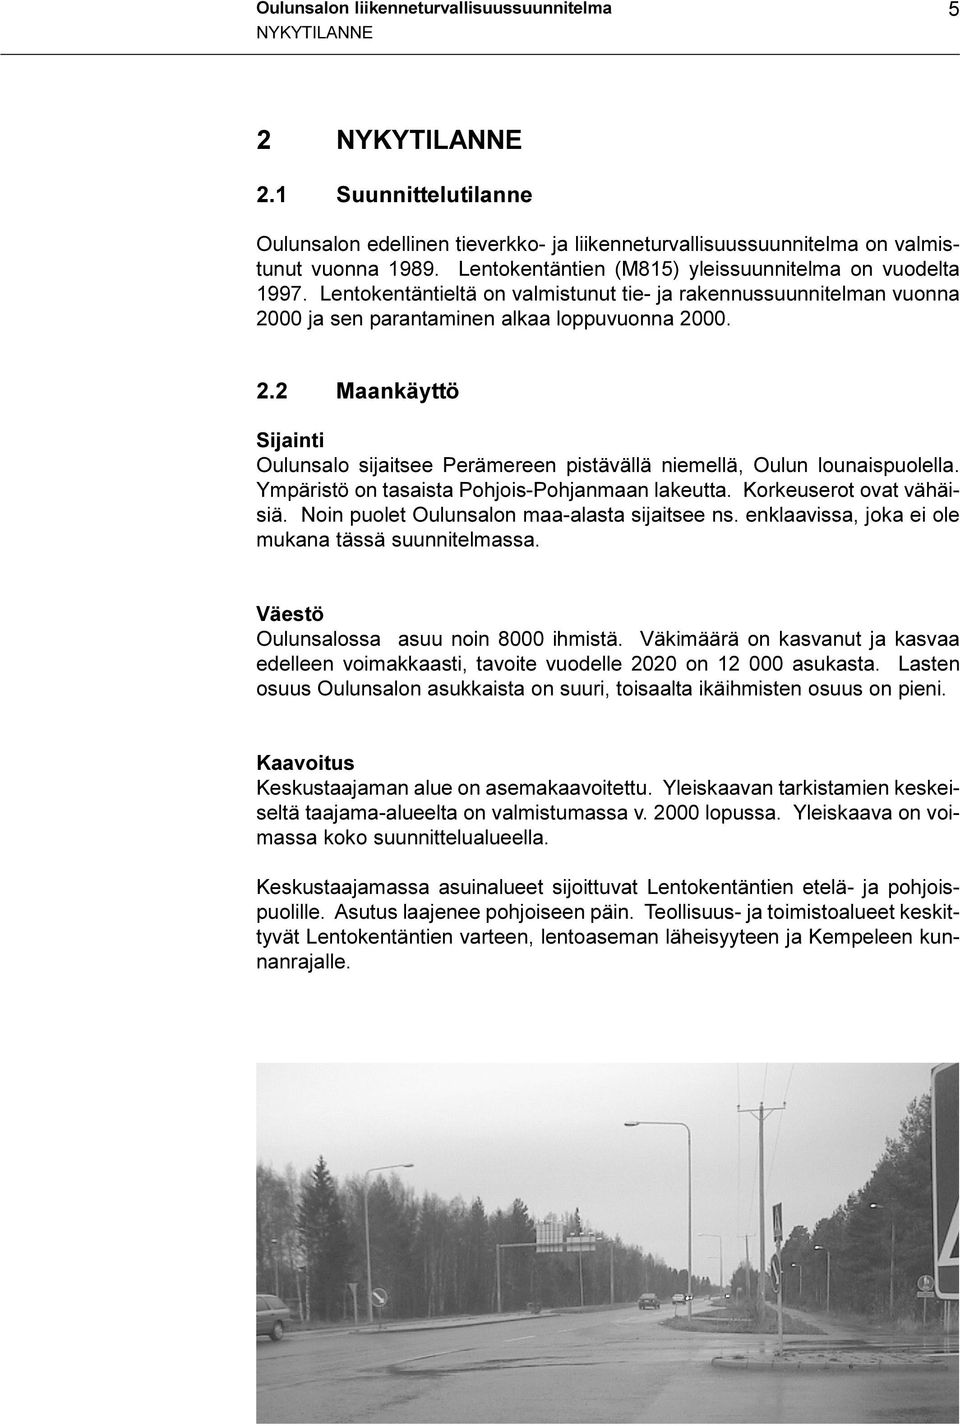 00 ja sen parantaminen alkaa loppuvuonna 2000. 2.2 Maankäyttö Sijainti Oulunsalo sijaitsee Perämereen pistävällä niemellä, Oulun lounaispuolella. Ympäristö on tasaista Pohjois-Pohjanmaan lakeutta.